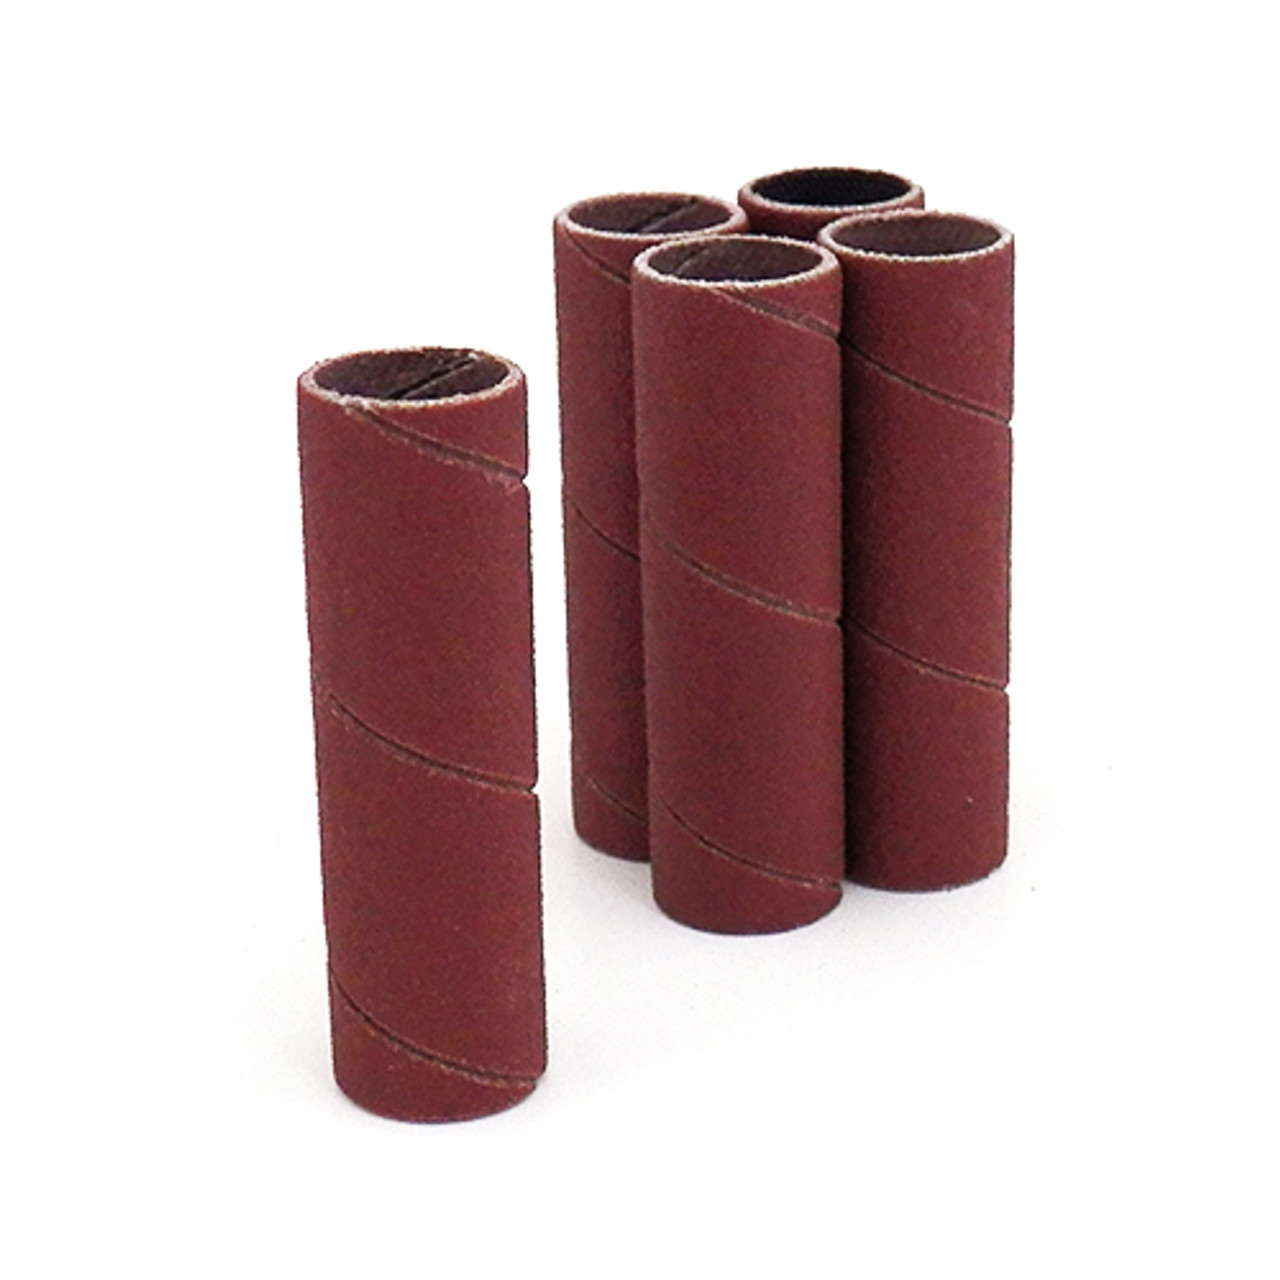 Klingspor Abrasives Aluminum Oxide Sanding Sleeves, 1/2"x 2" 60 Grit, 5pk